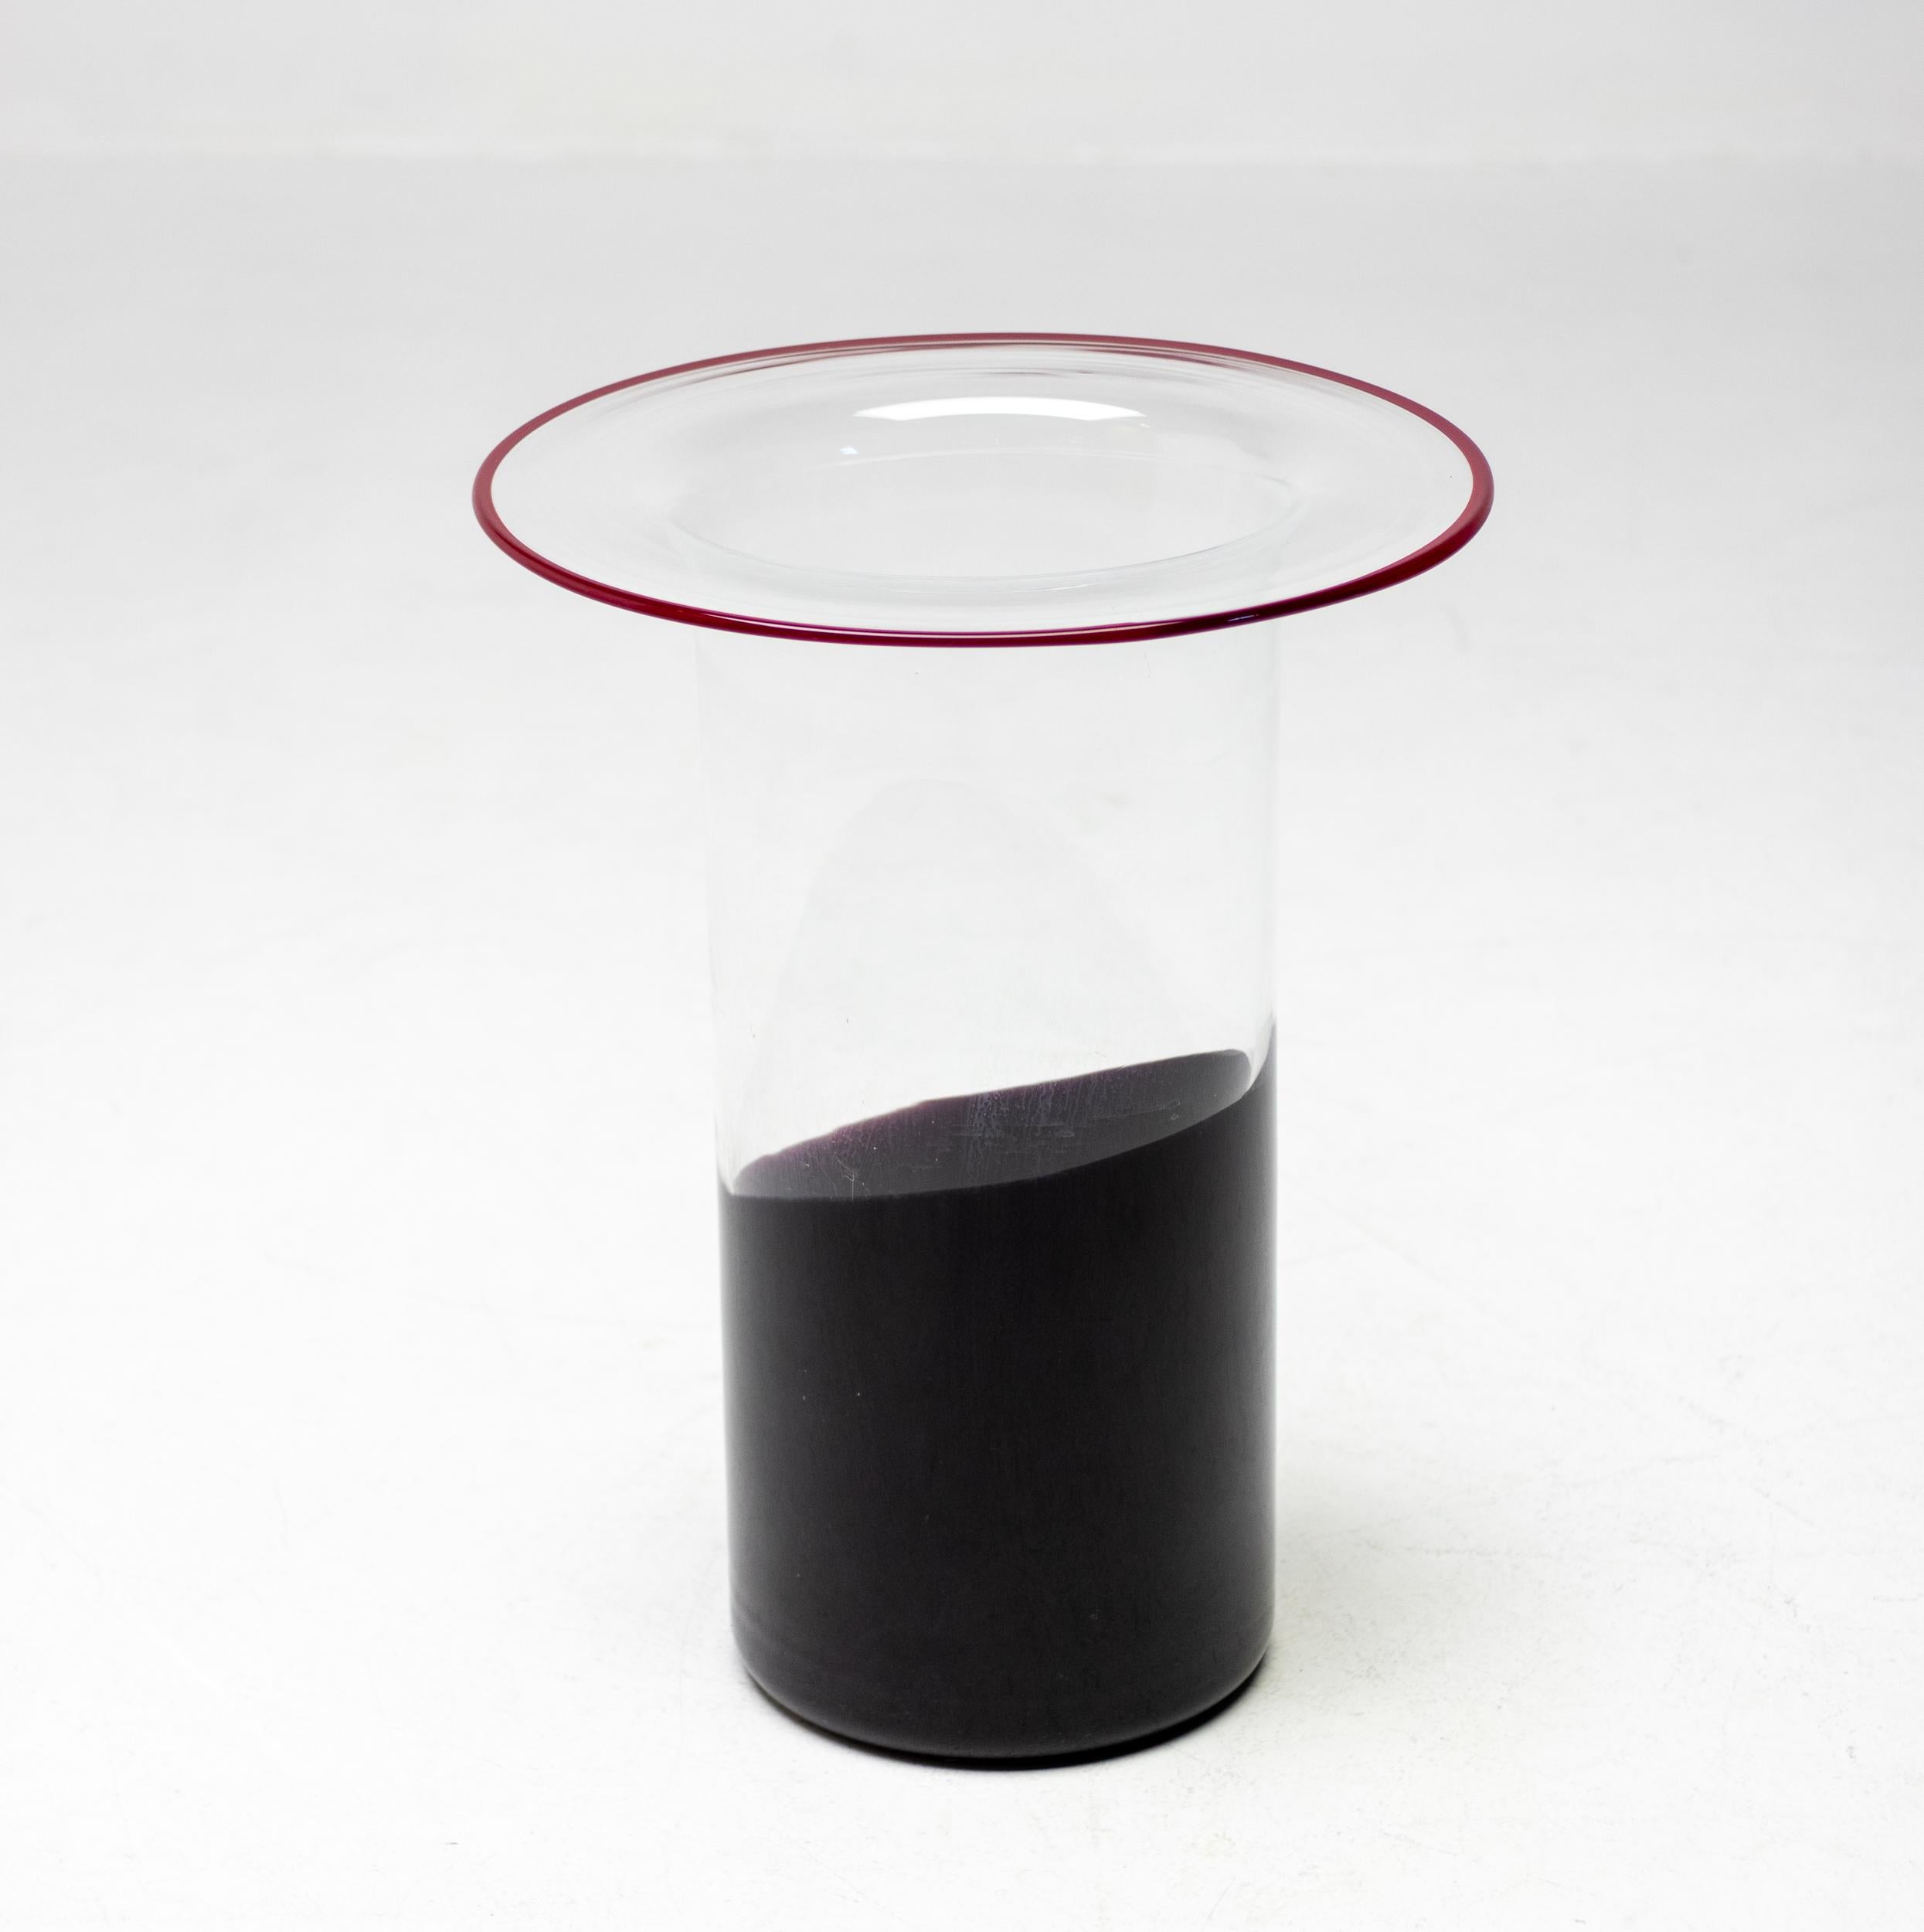 Wunderschöne zylinderförmige Vistosi-Hutvase aus klarem Glas mit teilweise schwarzem Glas am Boden und einem roten Glasrand, dem Markenzeichen von Vistosi. Der Designer Alessandro Pianon begann 1956 für Vistosi zu arbeiten und gründete 1962 sein